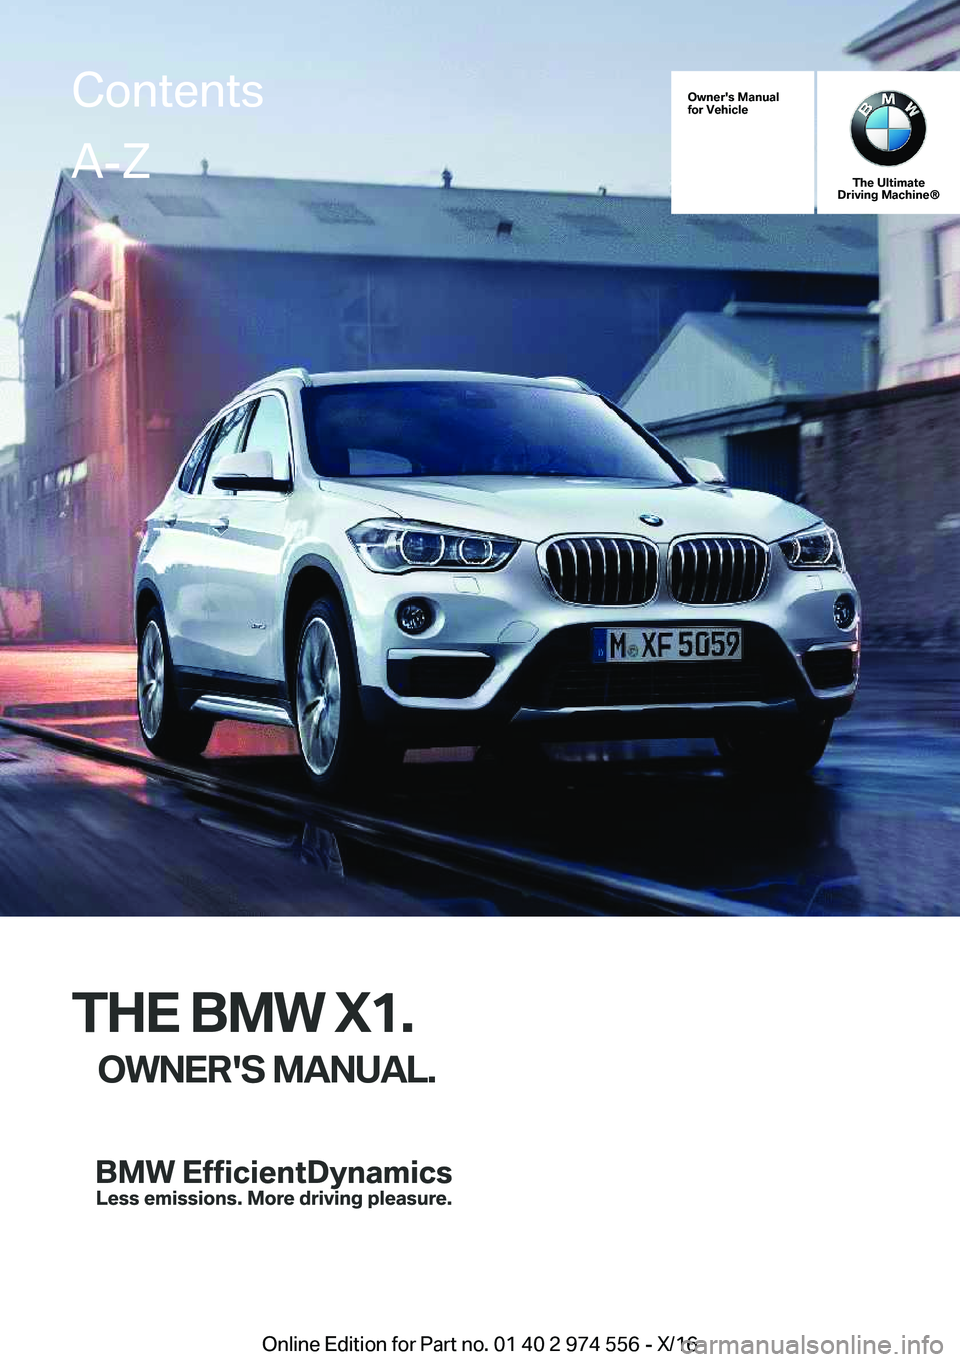 BMW X1 2017  Owners Manual �O�w�n�e�r�'�s��M�a�n�u�a�l
�f�o�r��V�e�h�i�c�l�e
�T�h�e��U�l�t�i�m�a�t�e
�D�r�i�v�i�n�g��M�a�c�h�i�n�e�n
�T�H�E��B�M�W��X�1�.
�O�W�N�E�R�'�S��M�A�N�U�A�L�.
�C�o�n�t�e�n�t�s�A�-�Z
�O�n�